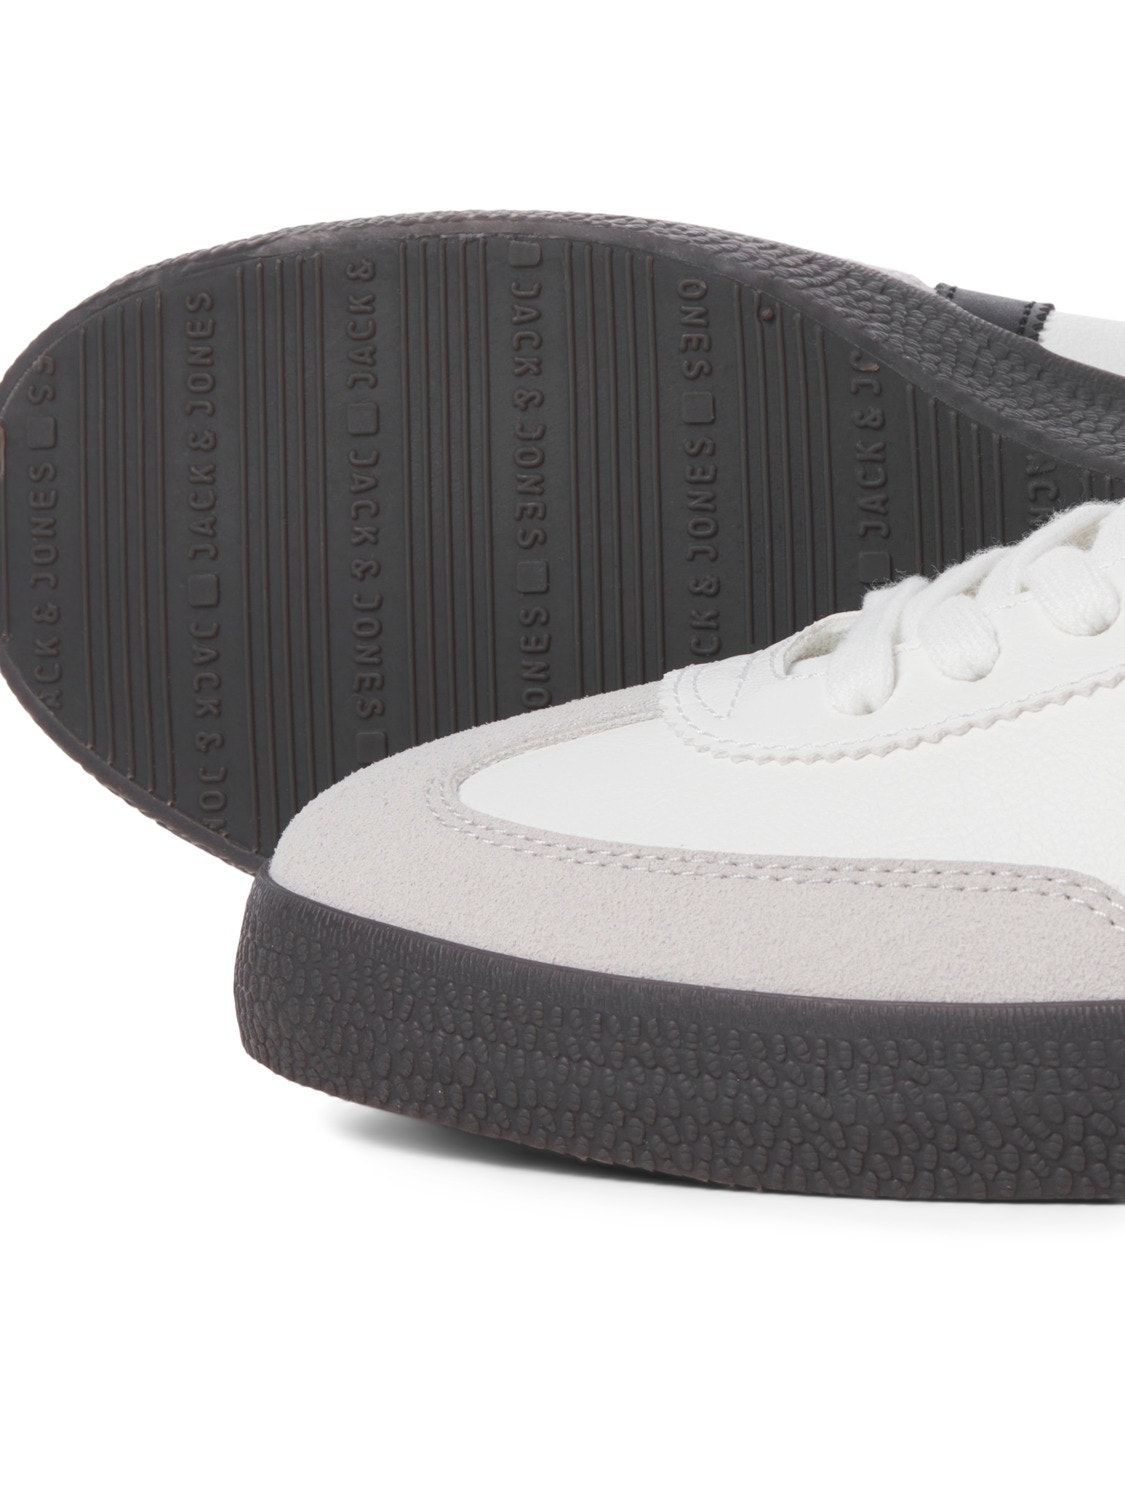 Jack & Jones Sneaker -Bright White - 12257190